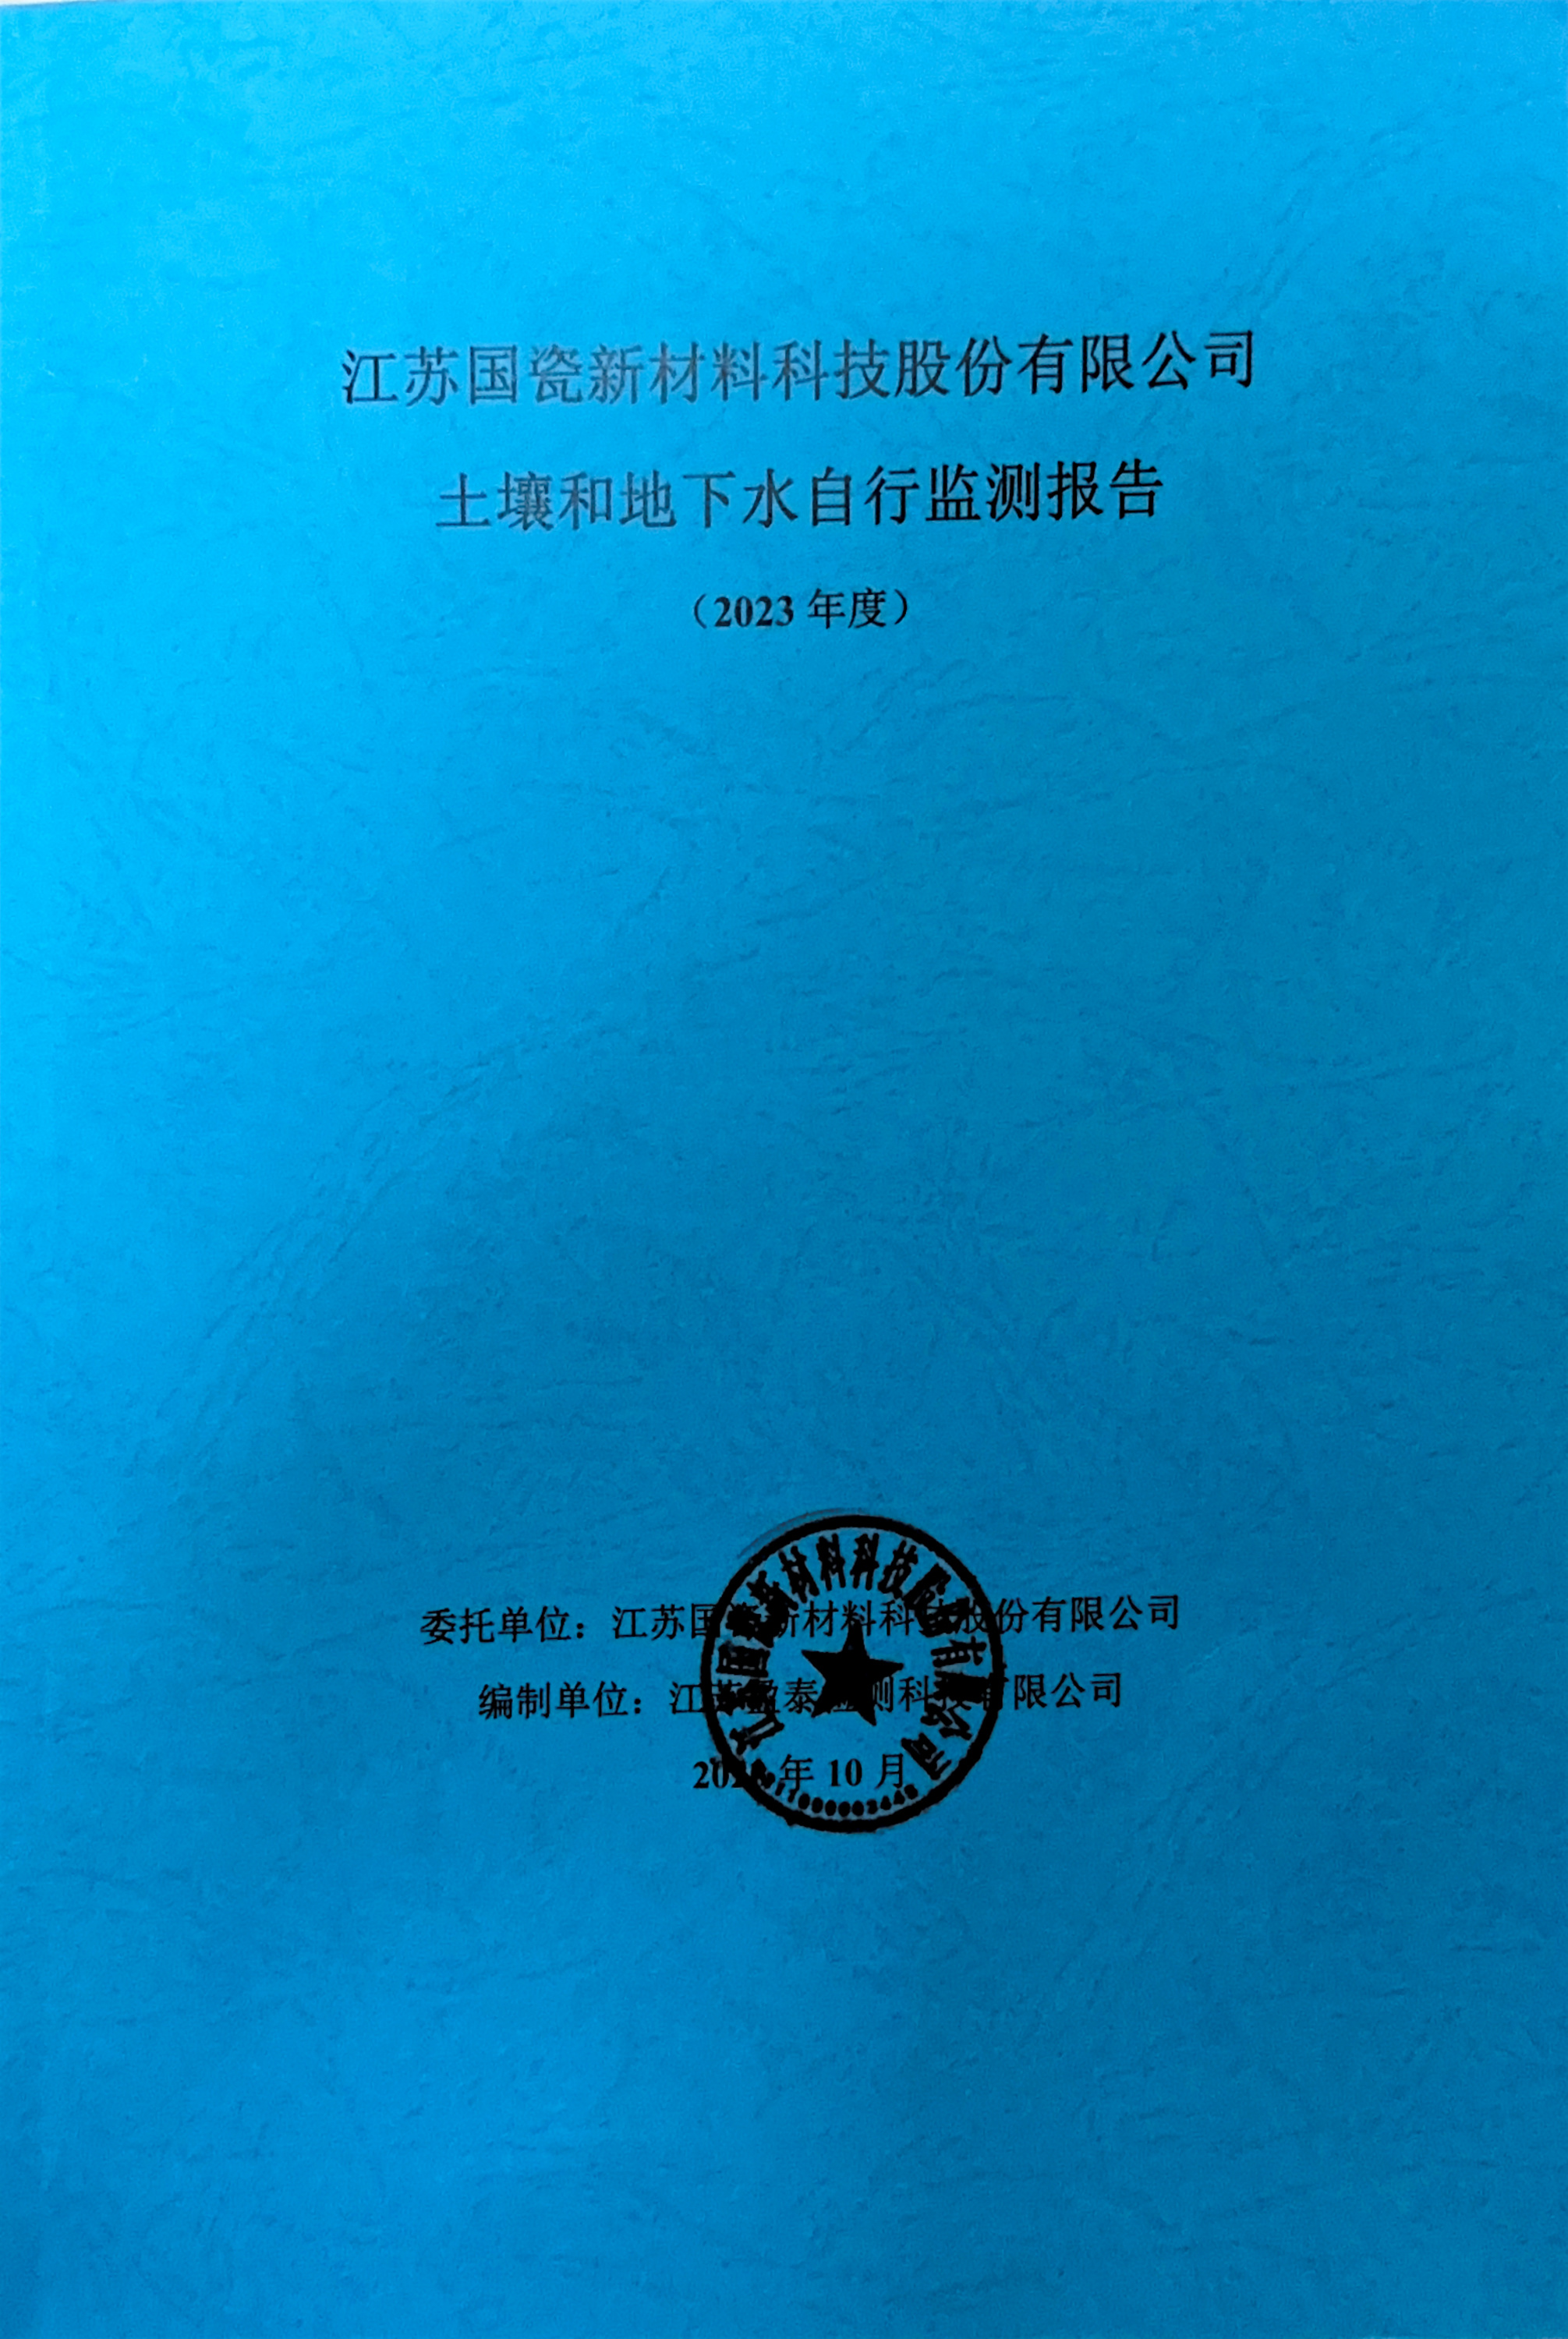 江苏国瓷新材料科技股份有限公司土壤和地下水自行监测报告（2023年度）